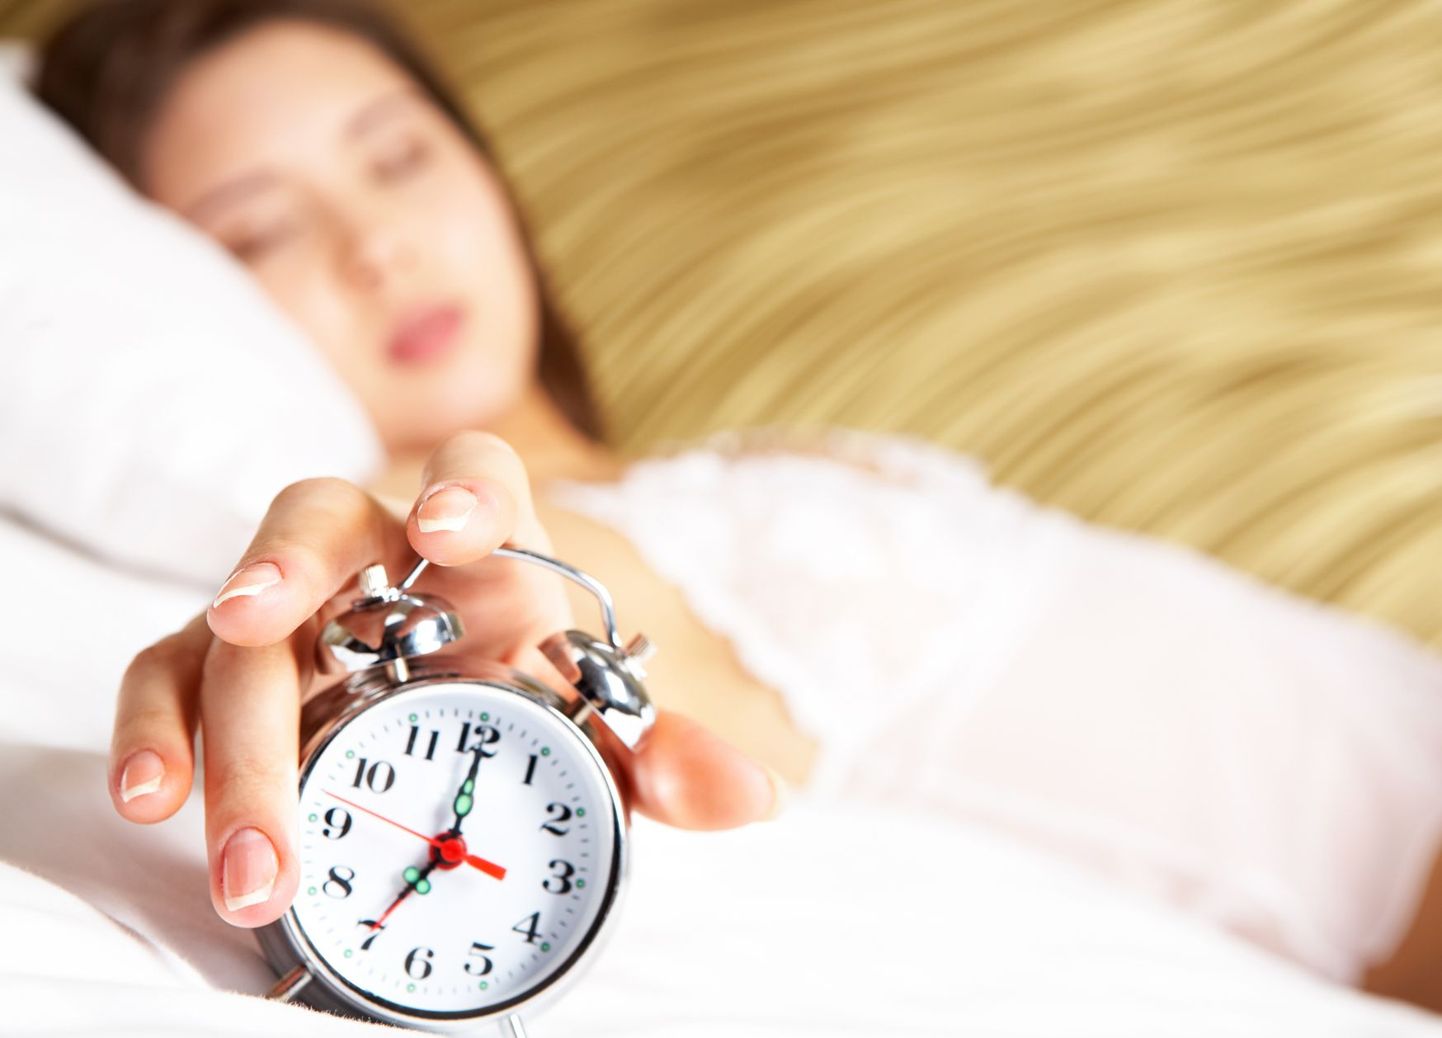 Kõik inimesed vajavad täisväärtuslikku und, aga vahel pole aega 8-tunniseks uneajaks.